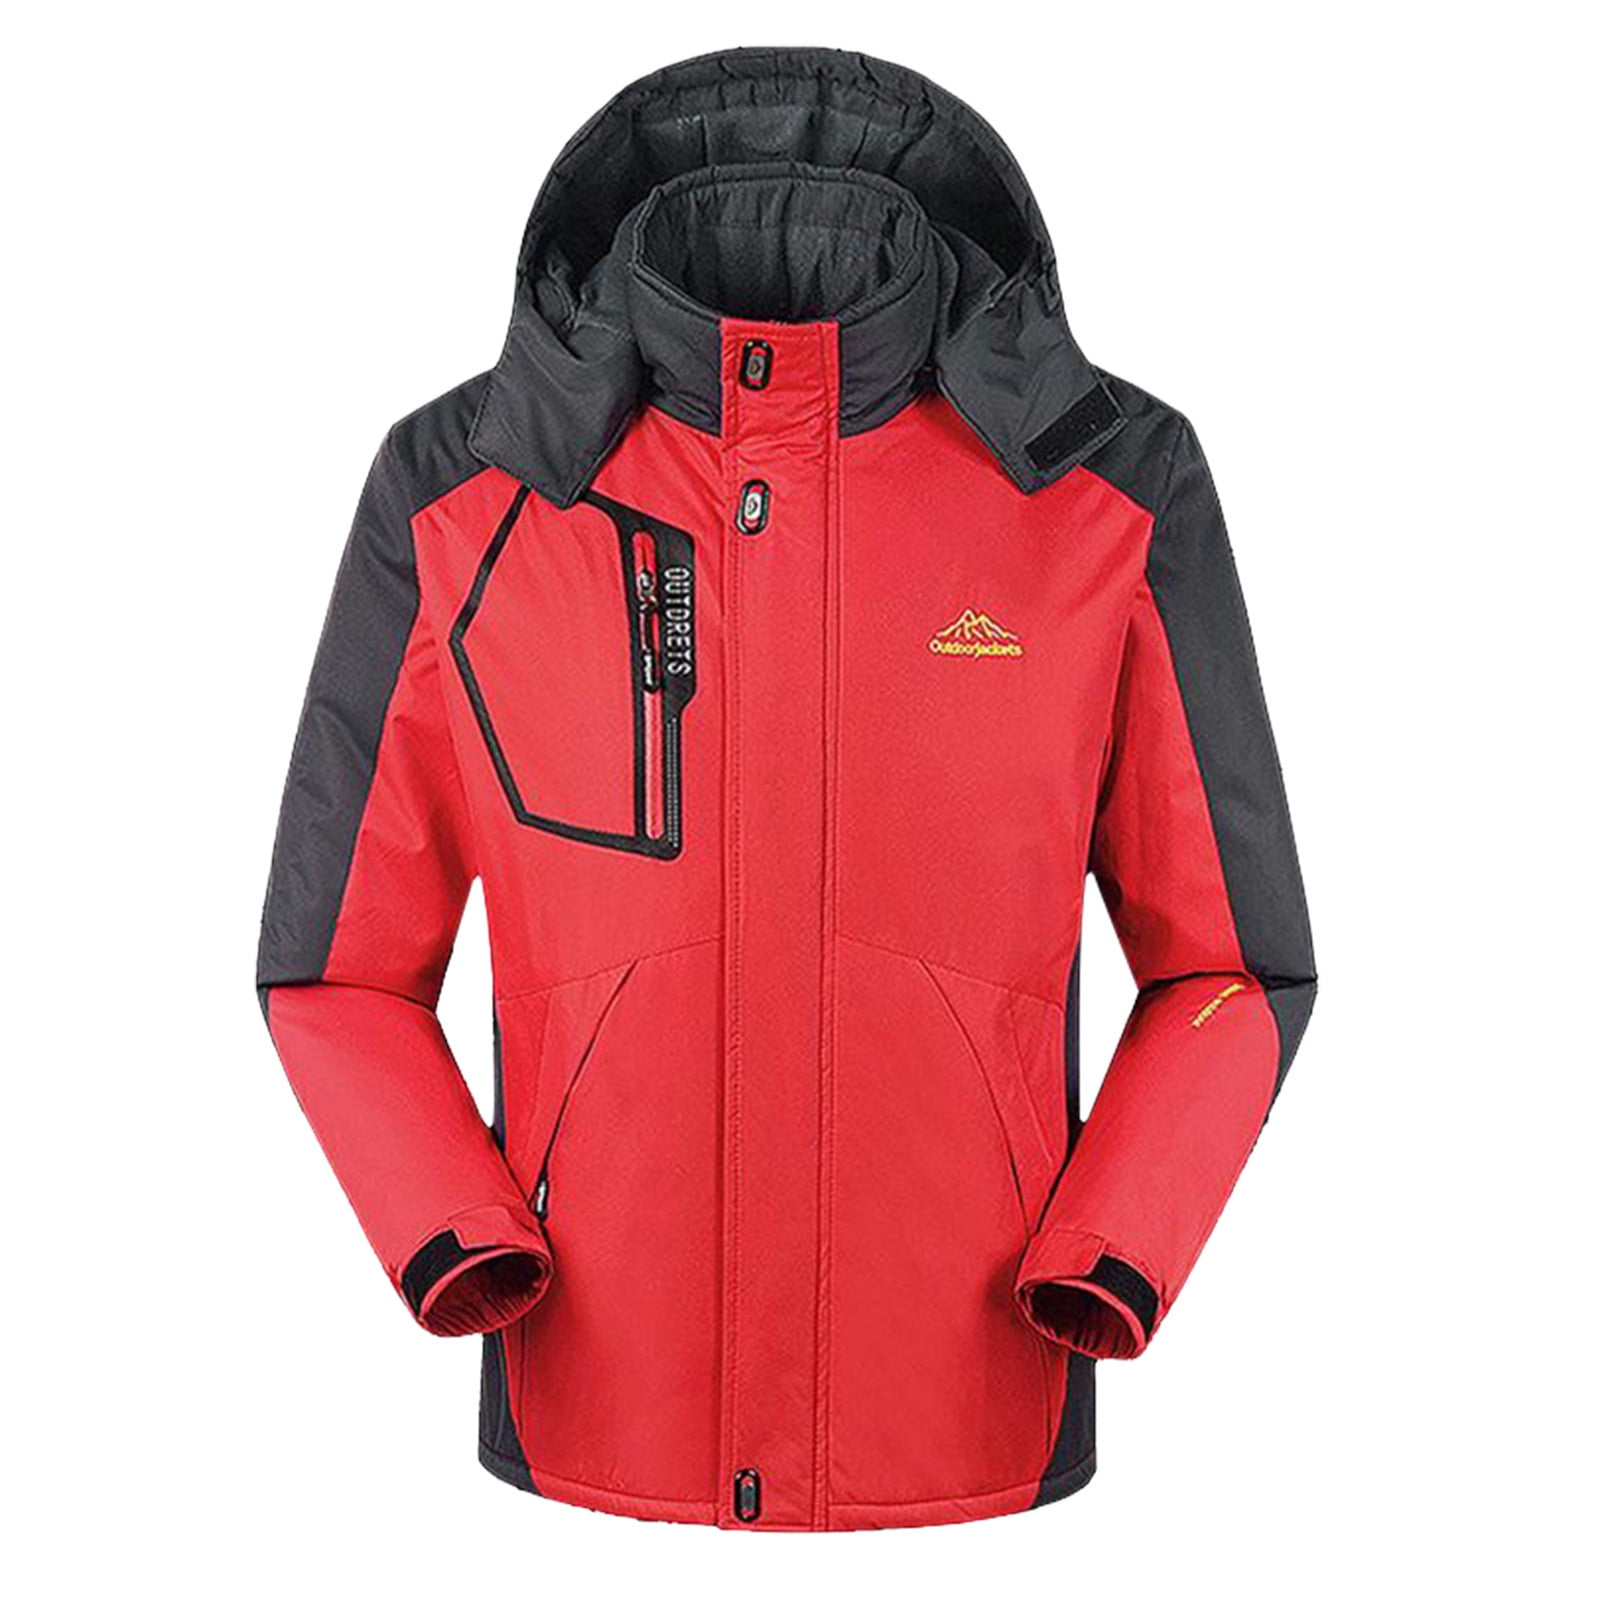 YODETEY Men'S Mountain Waterproof Ski Jacket Windproof Rain Jacket Winter  Warm Snow Coat with Removable Hood Black 14(XXXL) 